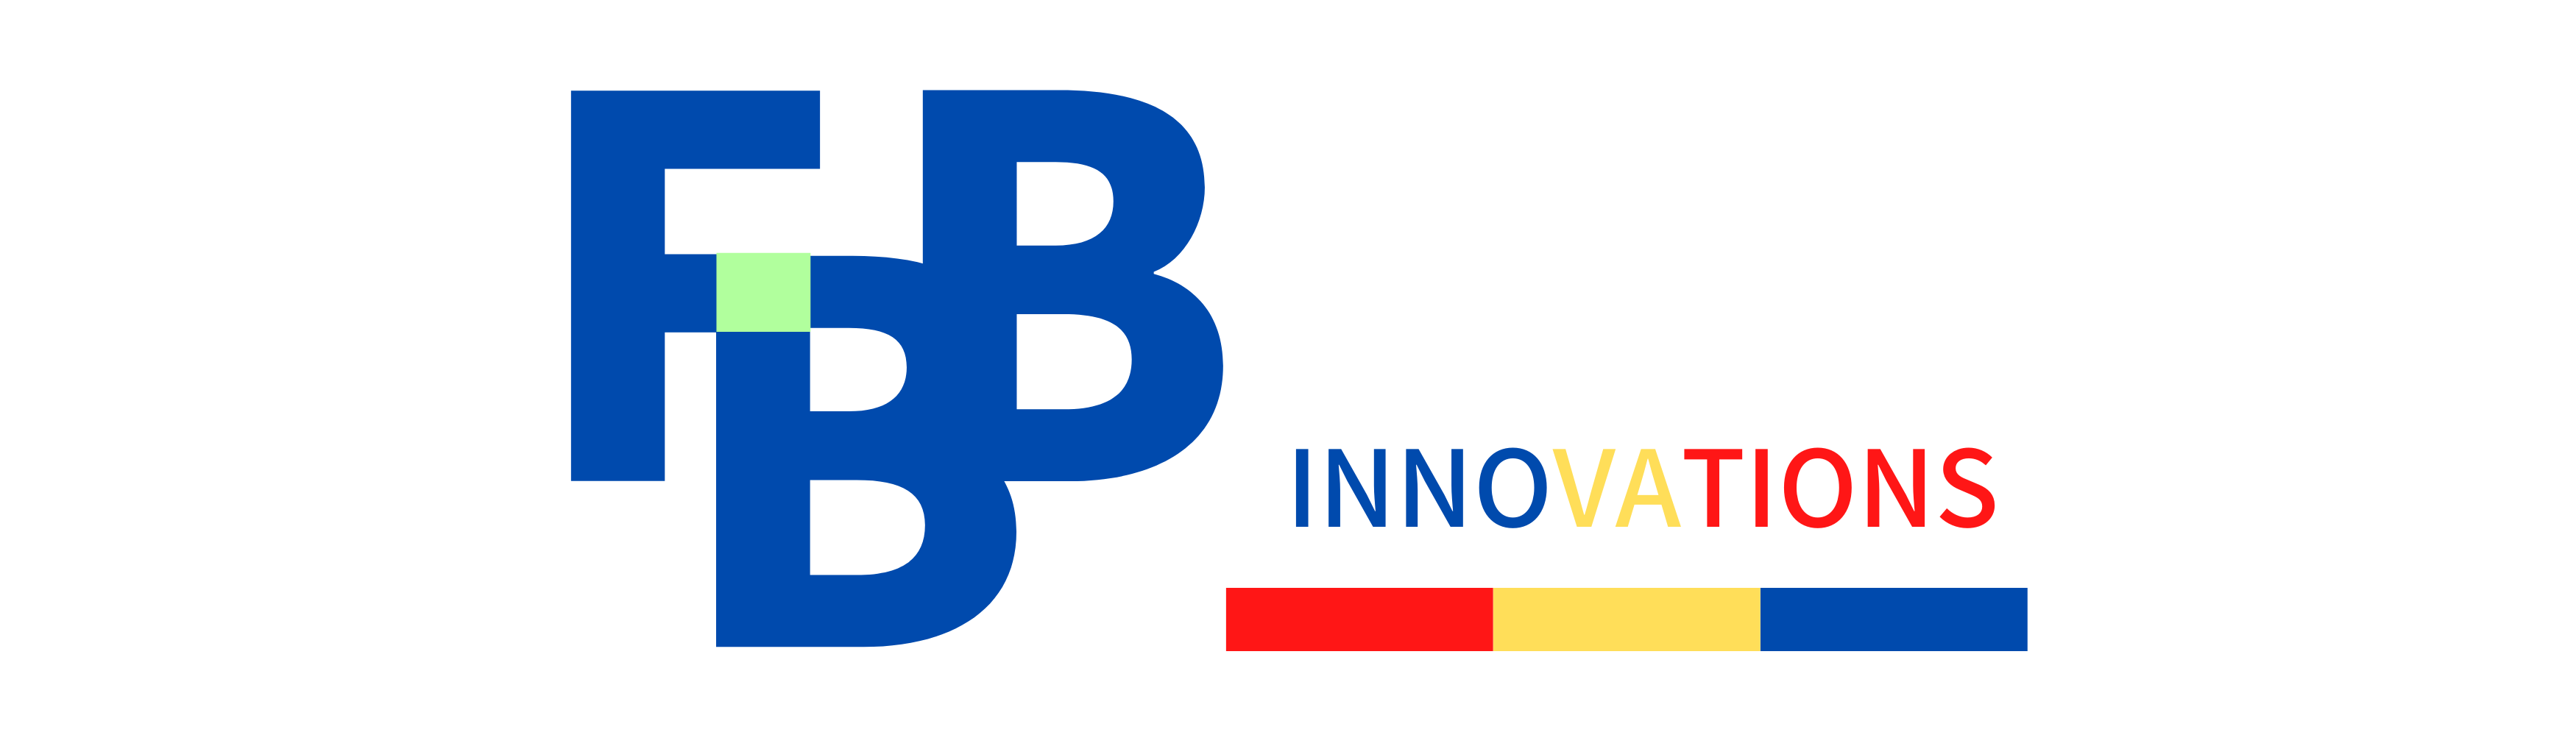 FBB Innovations